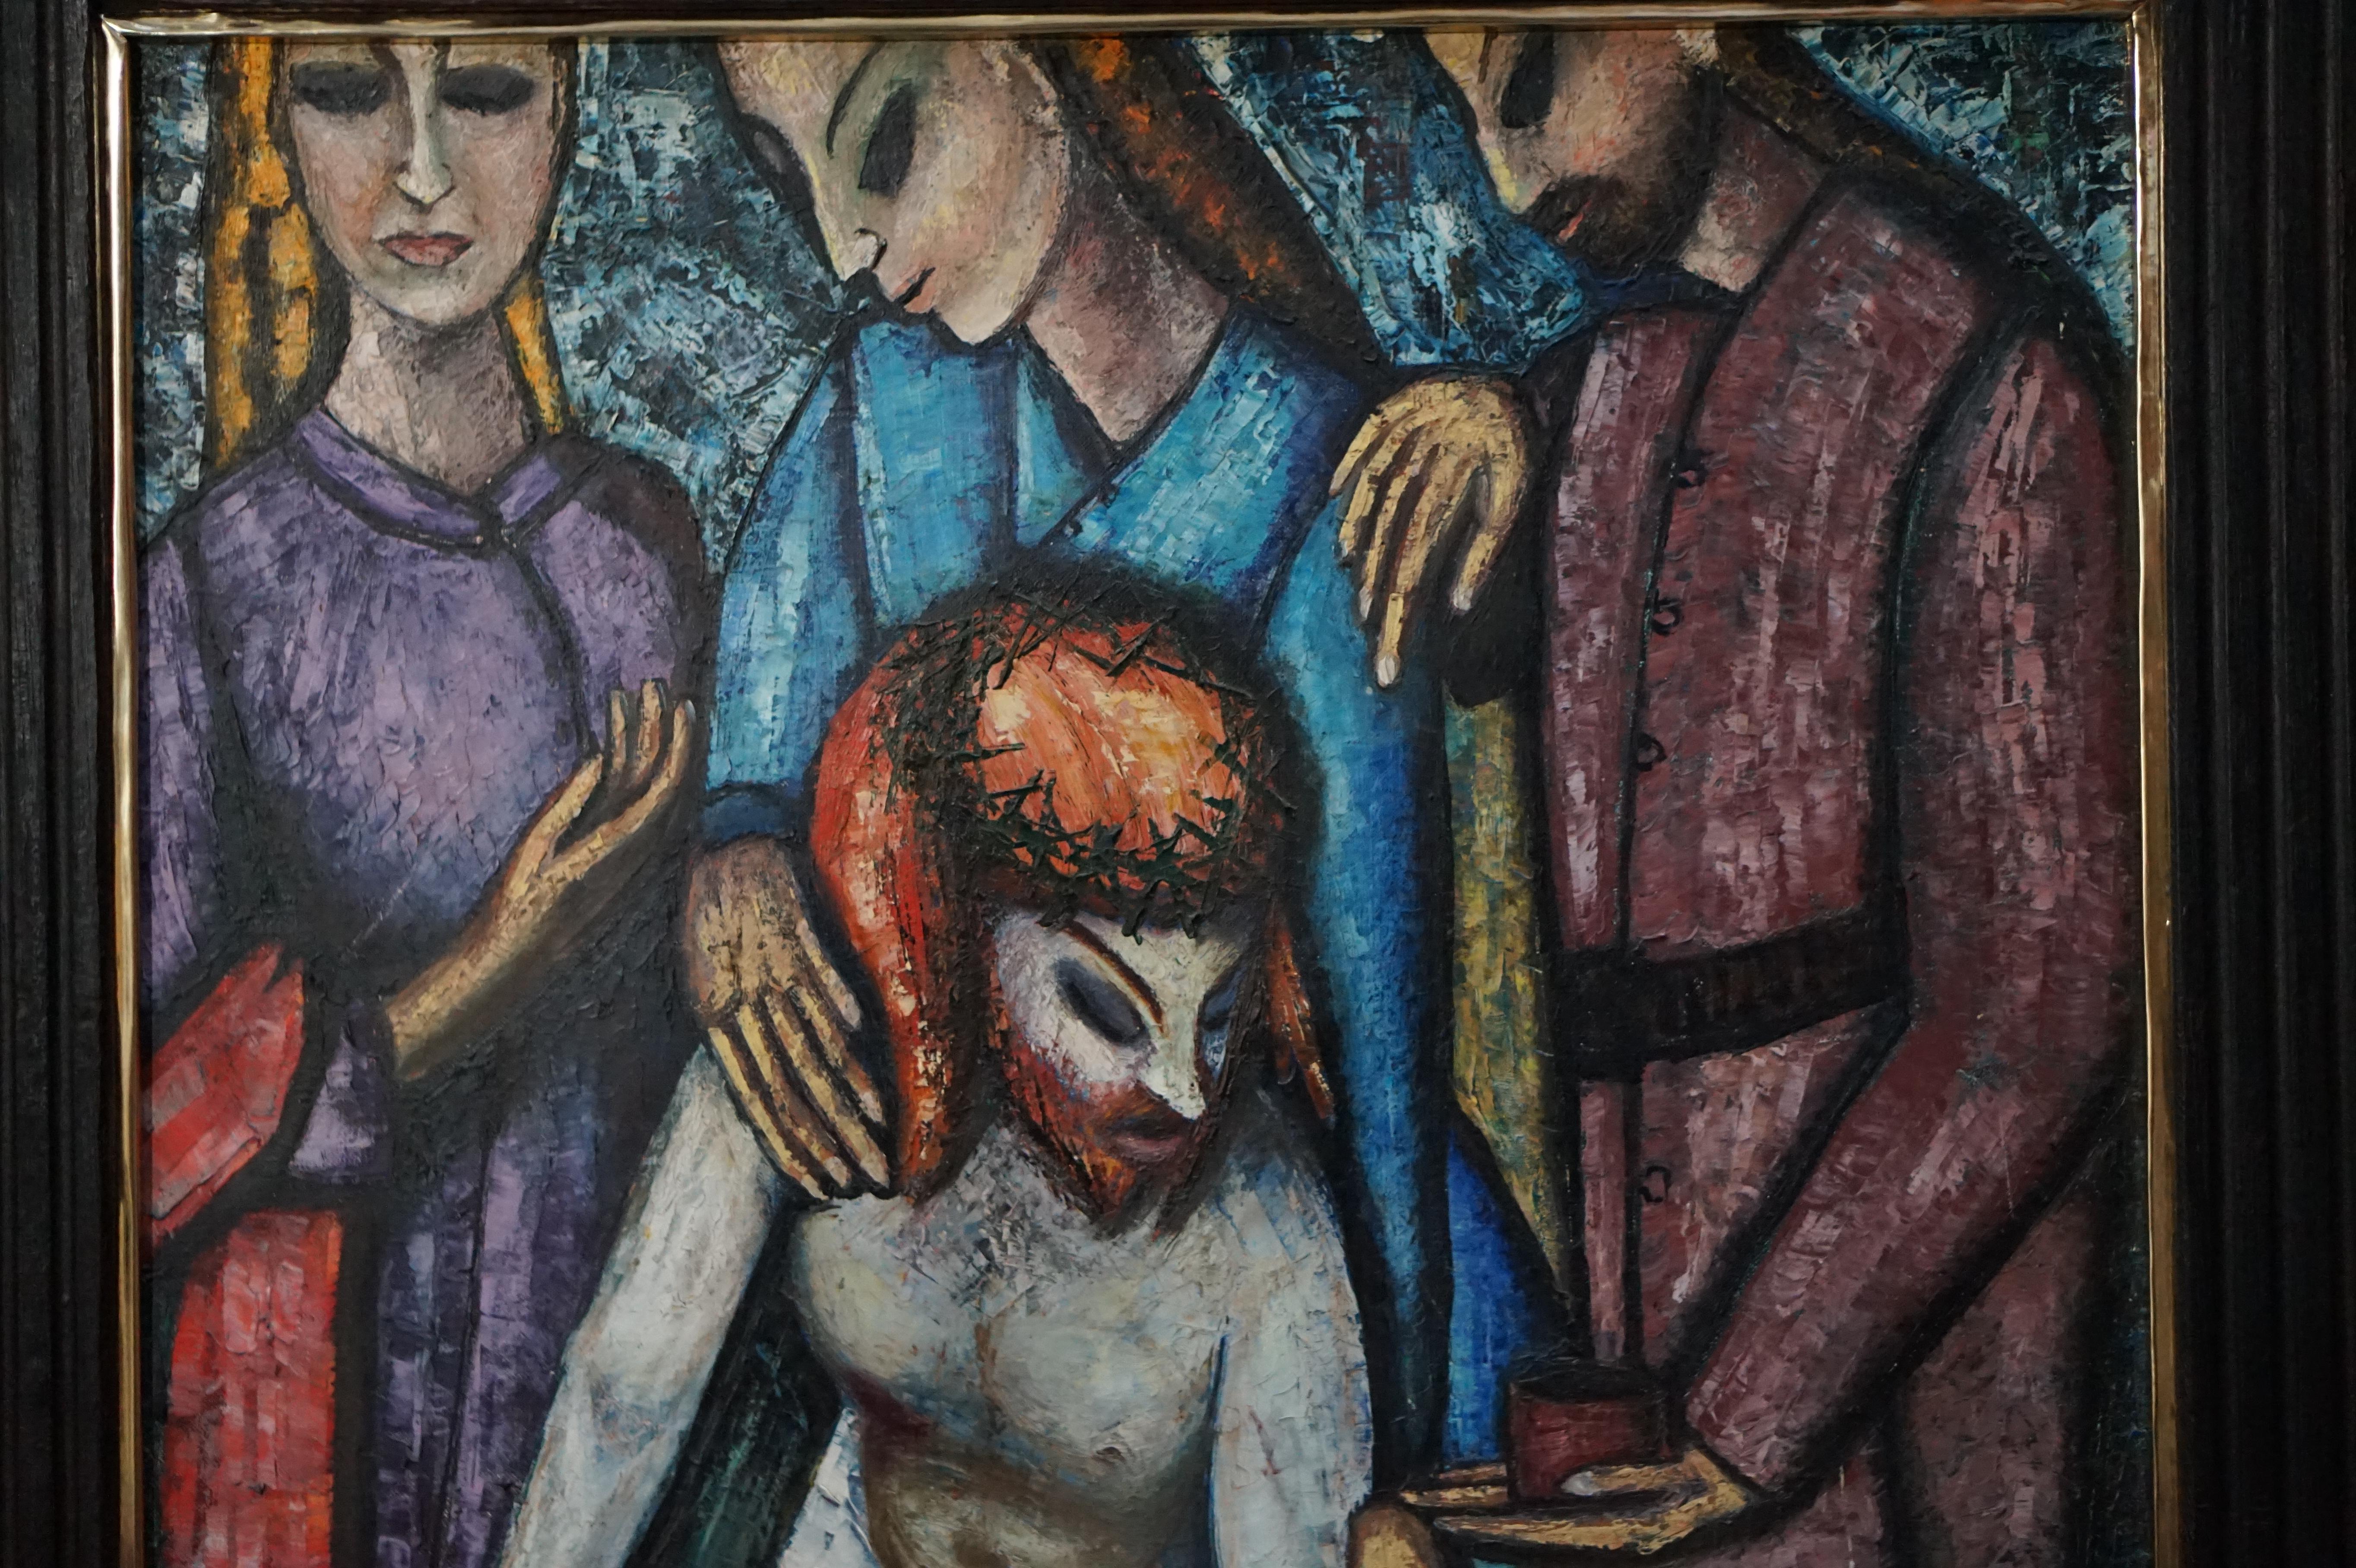 Religiöses Gemälde von Jesus von JF Bauwens, Belgien, 1950er Jahre.
Abmessungen Rahmen; Breite 105 cm, Höhe 123 cm.
Abmessungen Gemälde; Breite 78 cm, Höhe 98 cm.